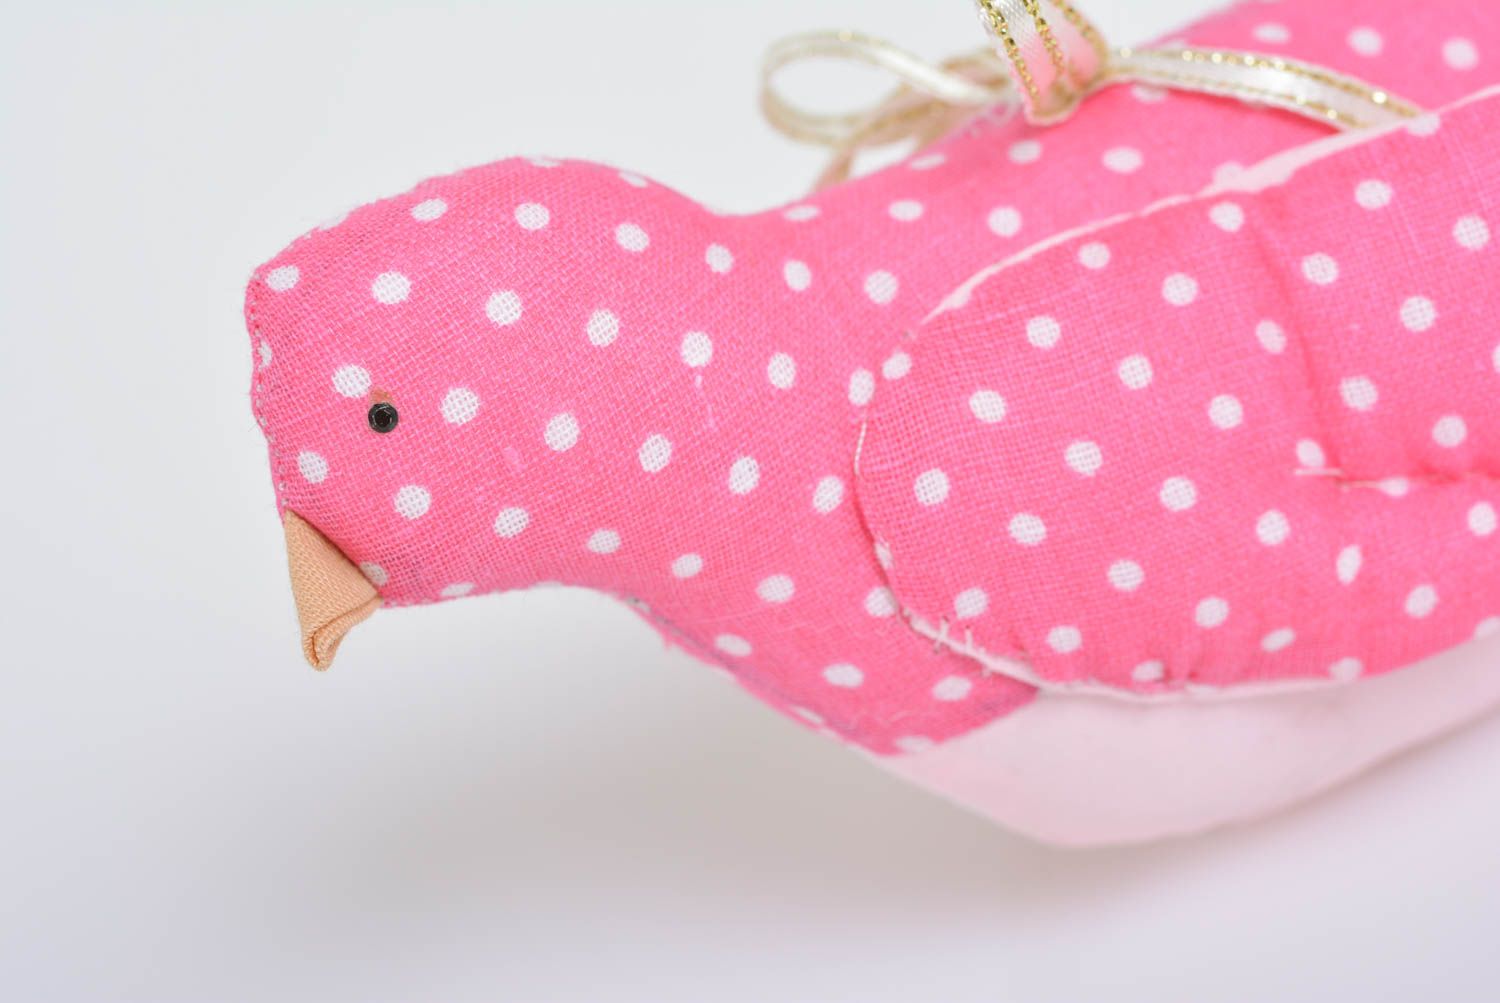 Интерьерная подвеска птичка розовая в горошек мягкая из хлопка ручной работы фото 2